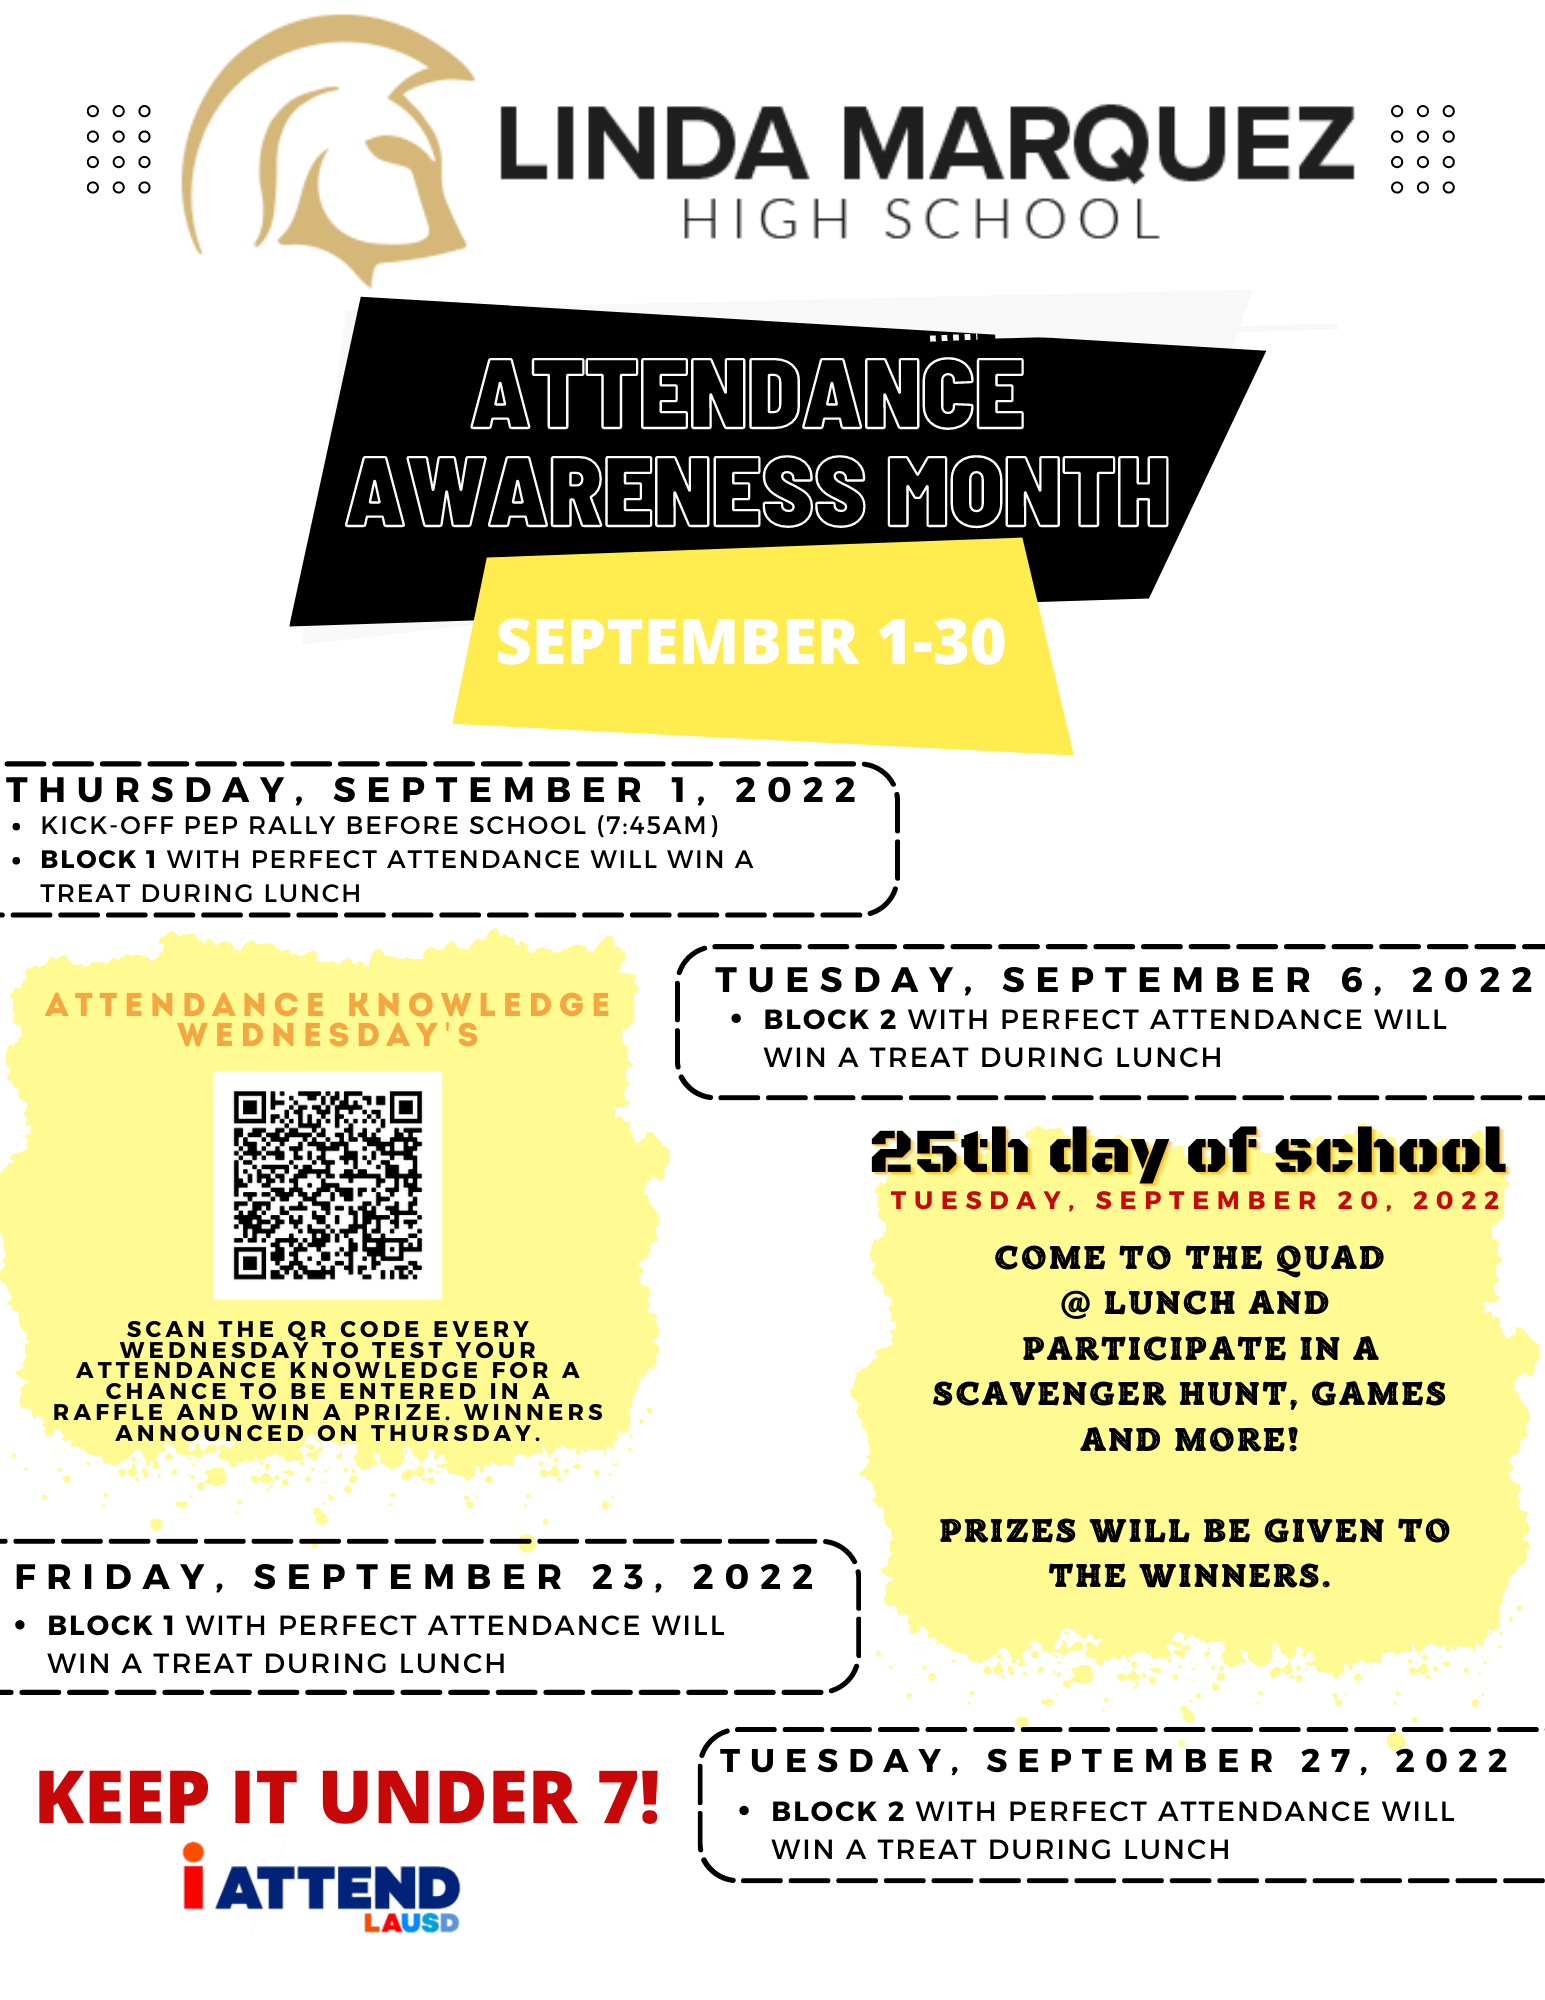 September is attendance awareness month